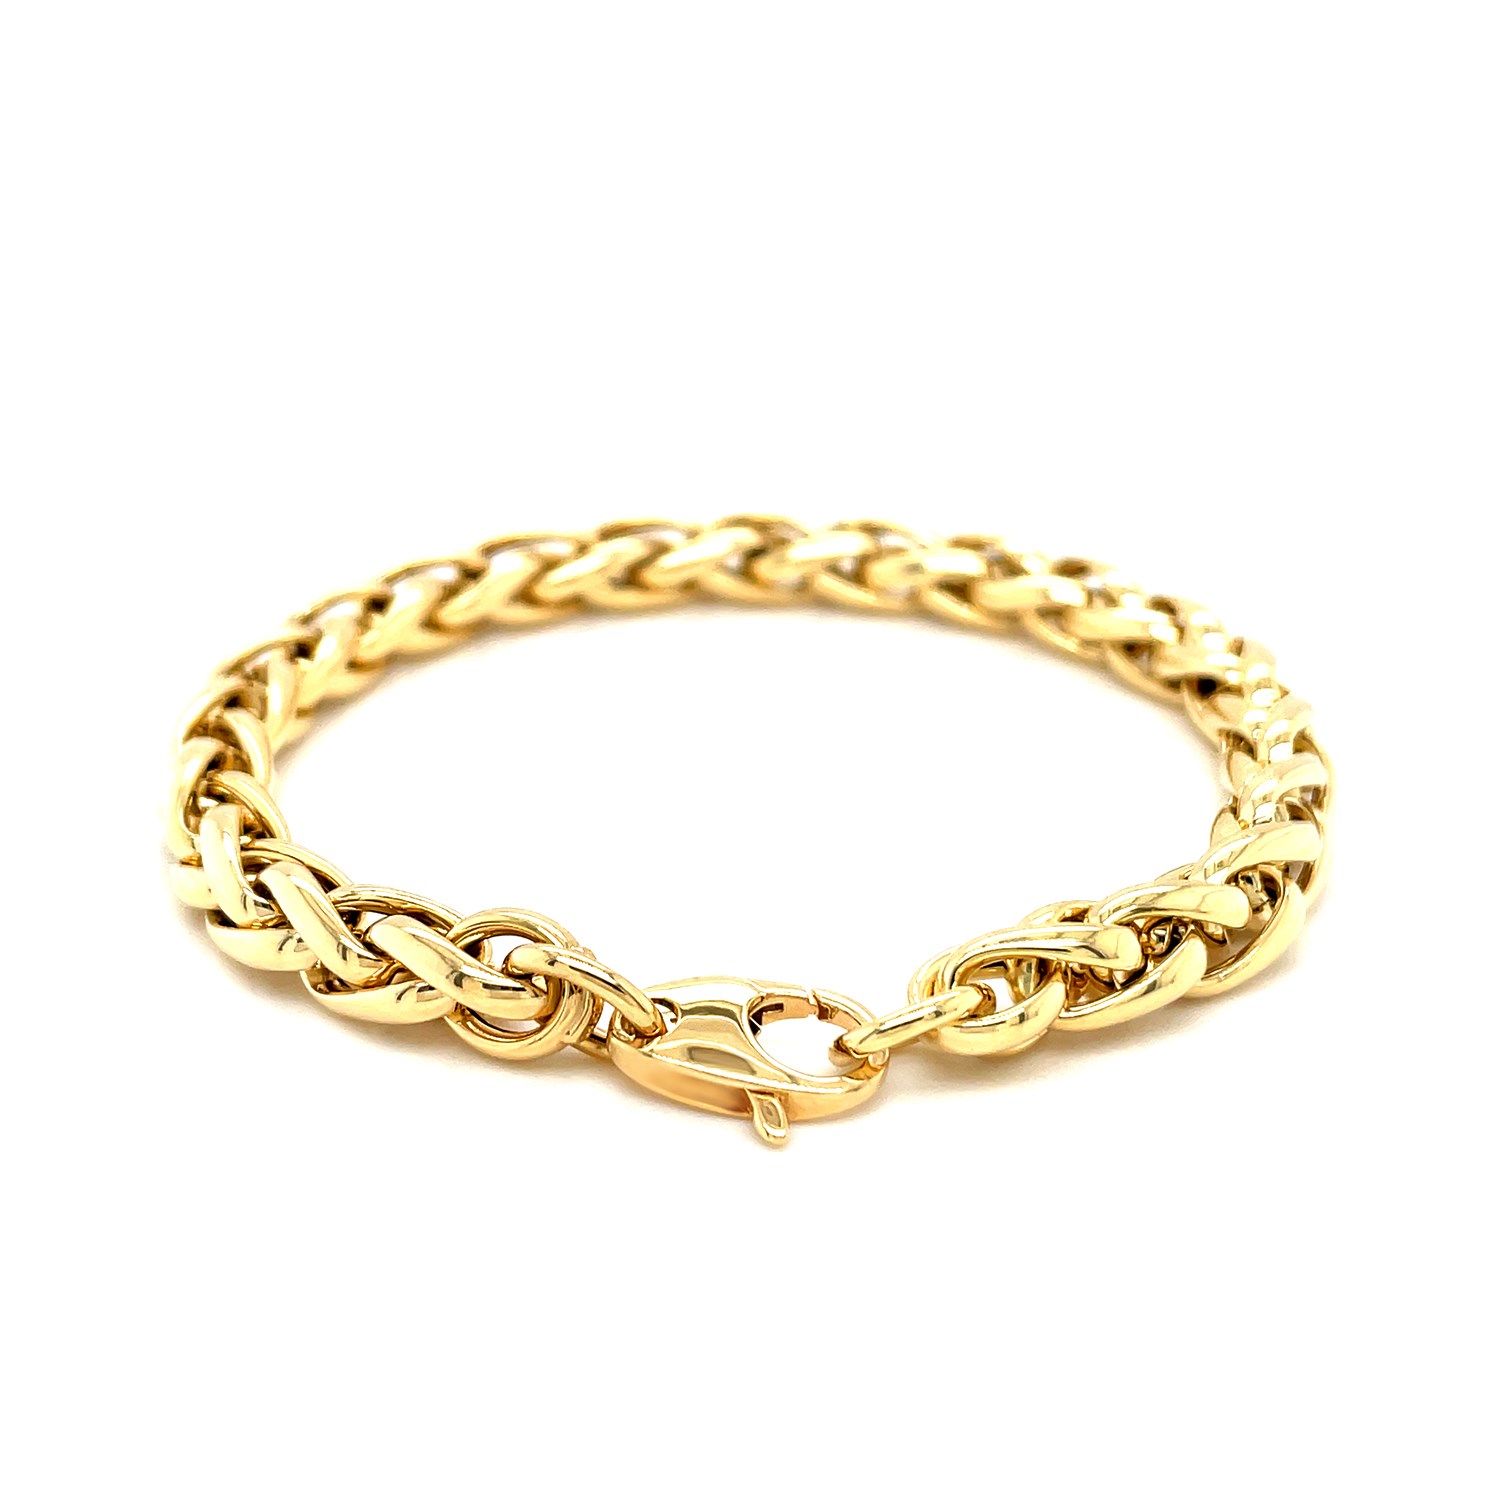 Wheat Link Bracelet in 14k Yellow Gold | Lyla Jewelers